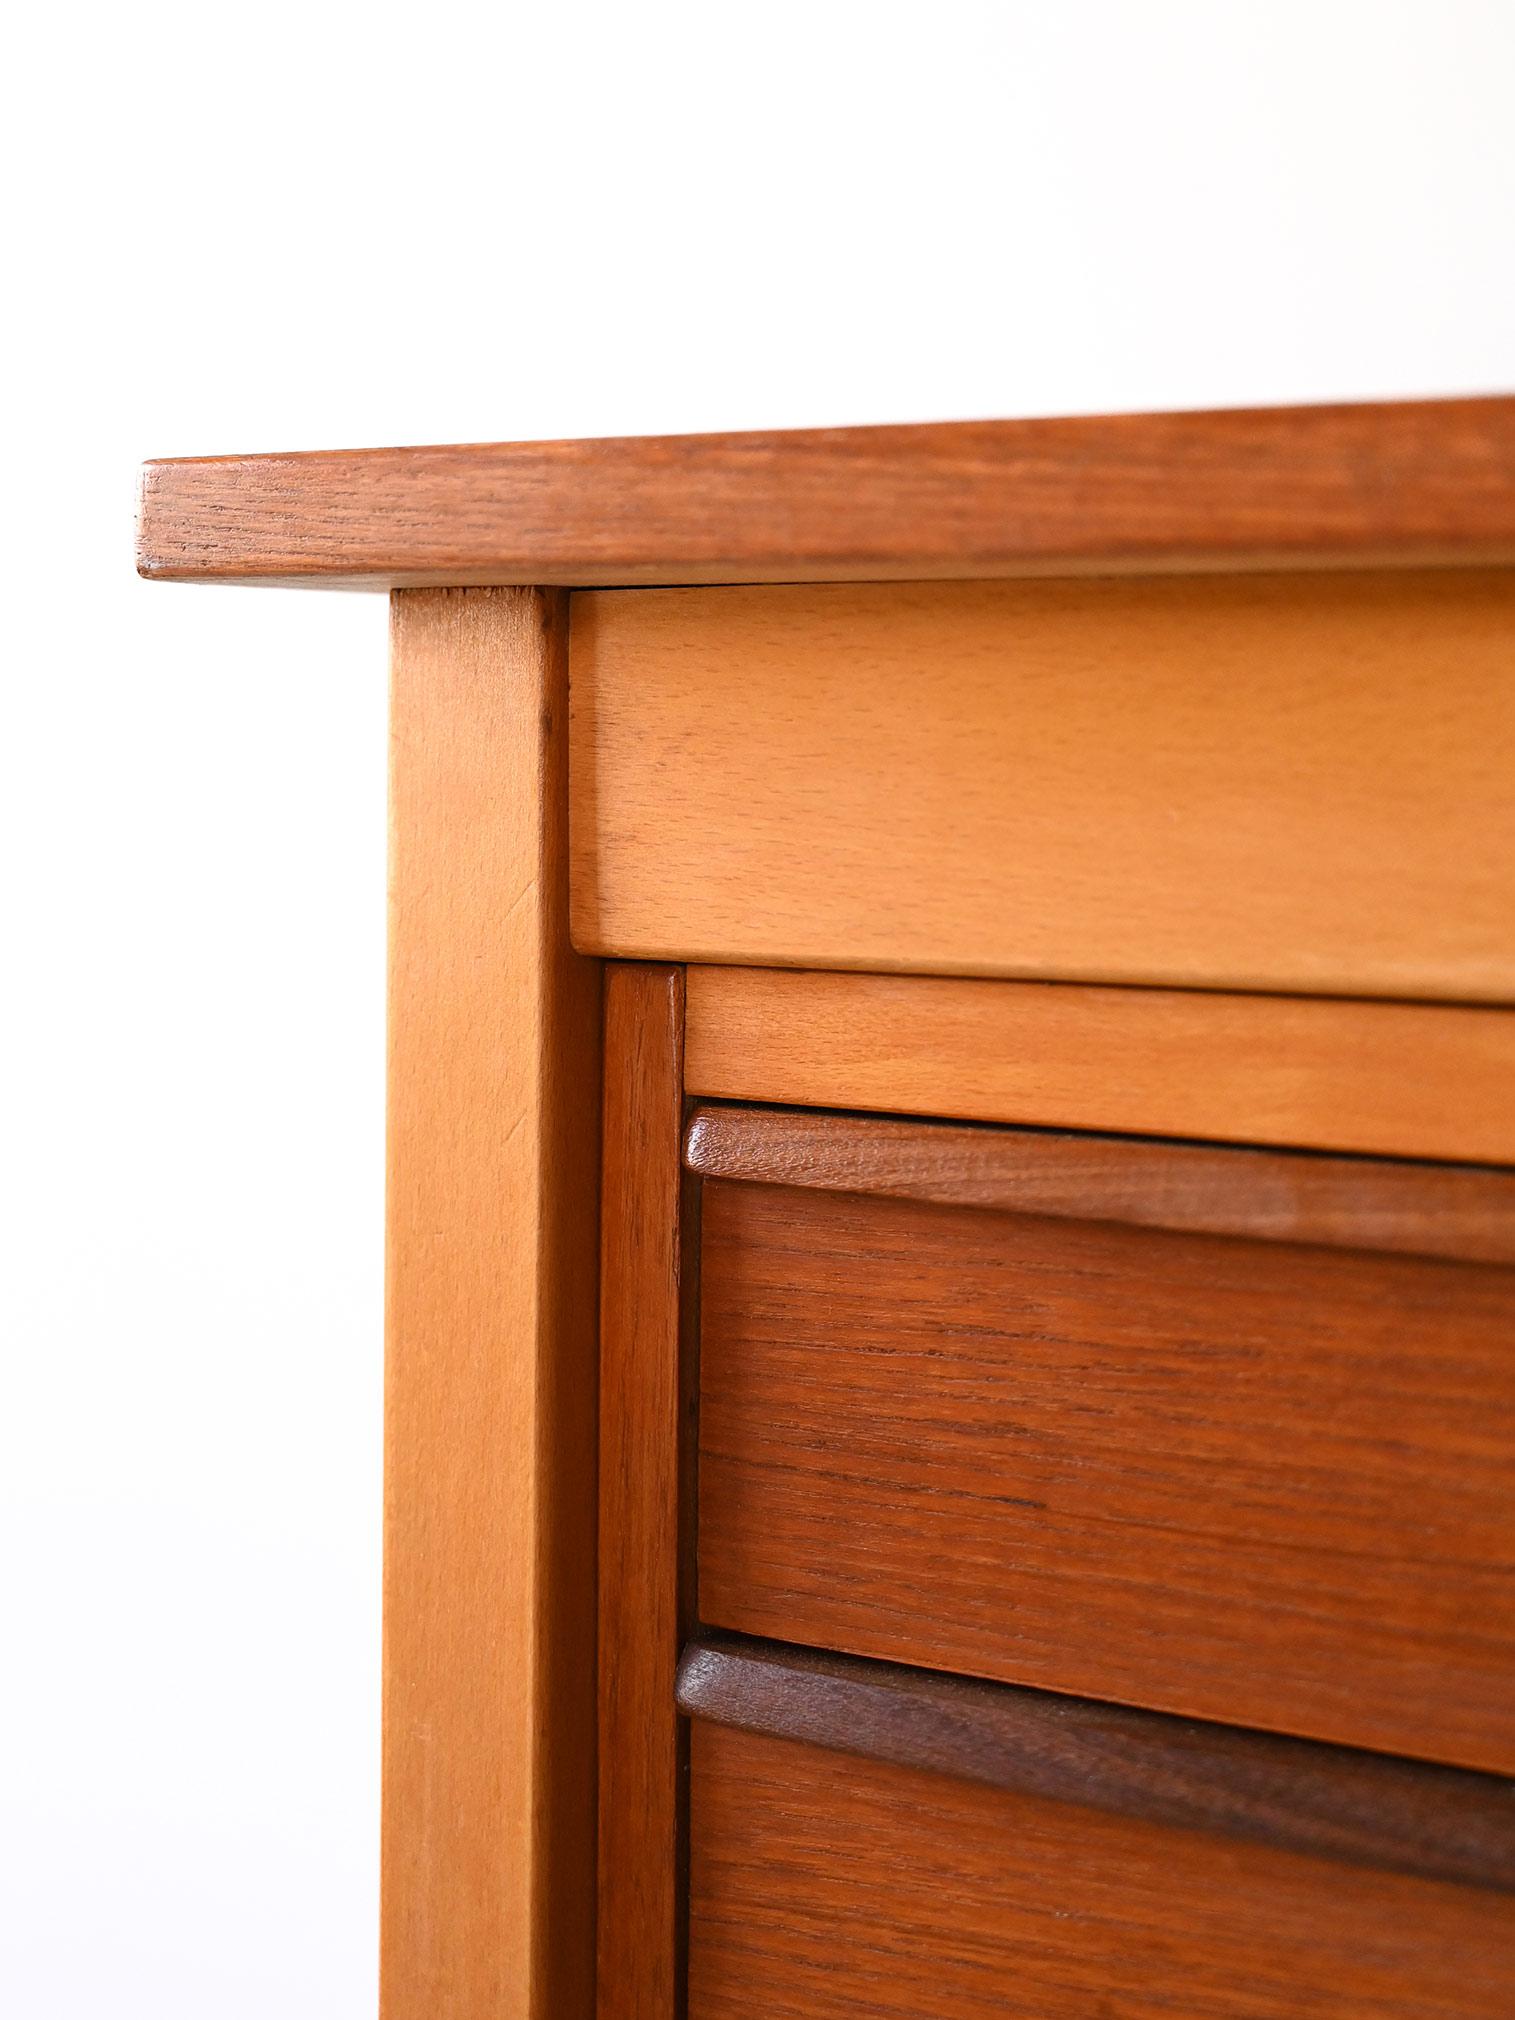 Scandinavian retro wooden desk 3